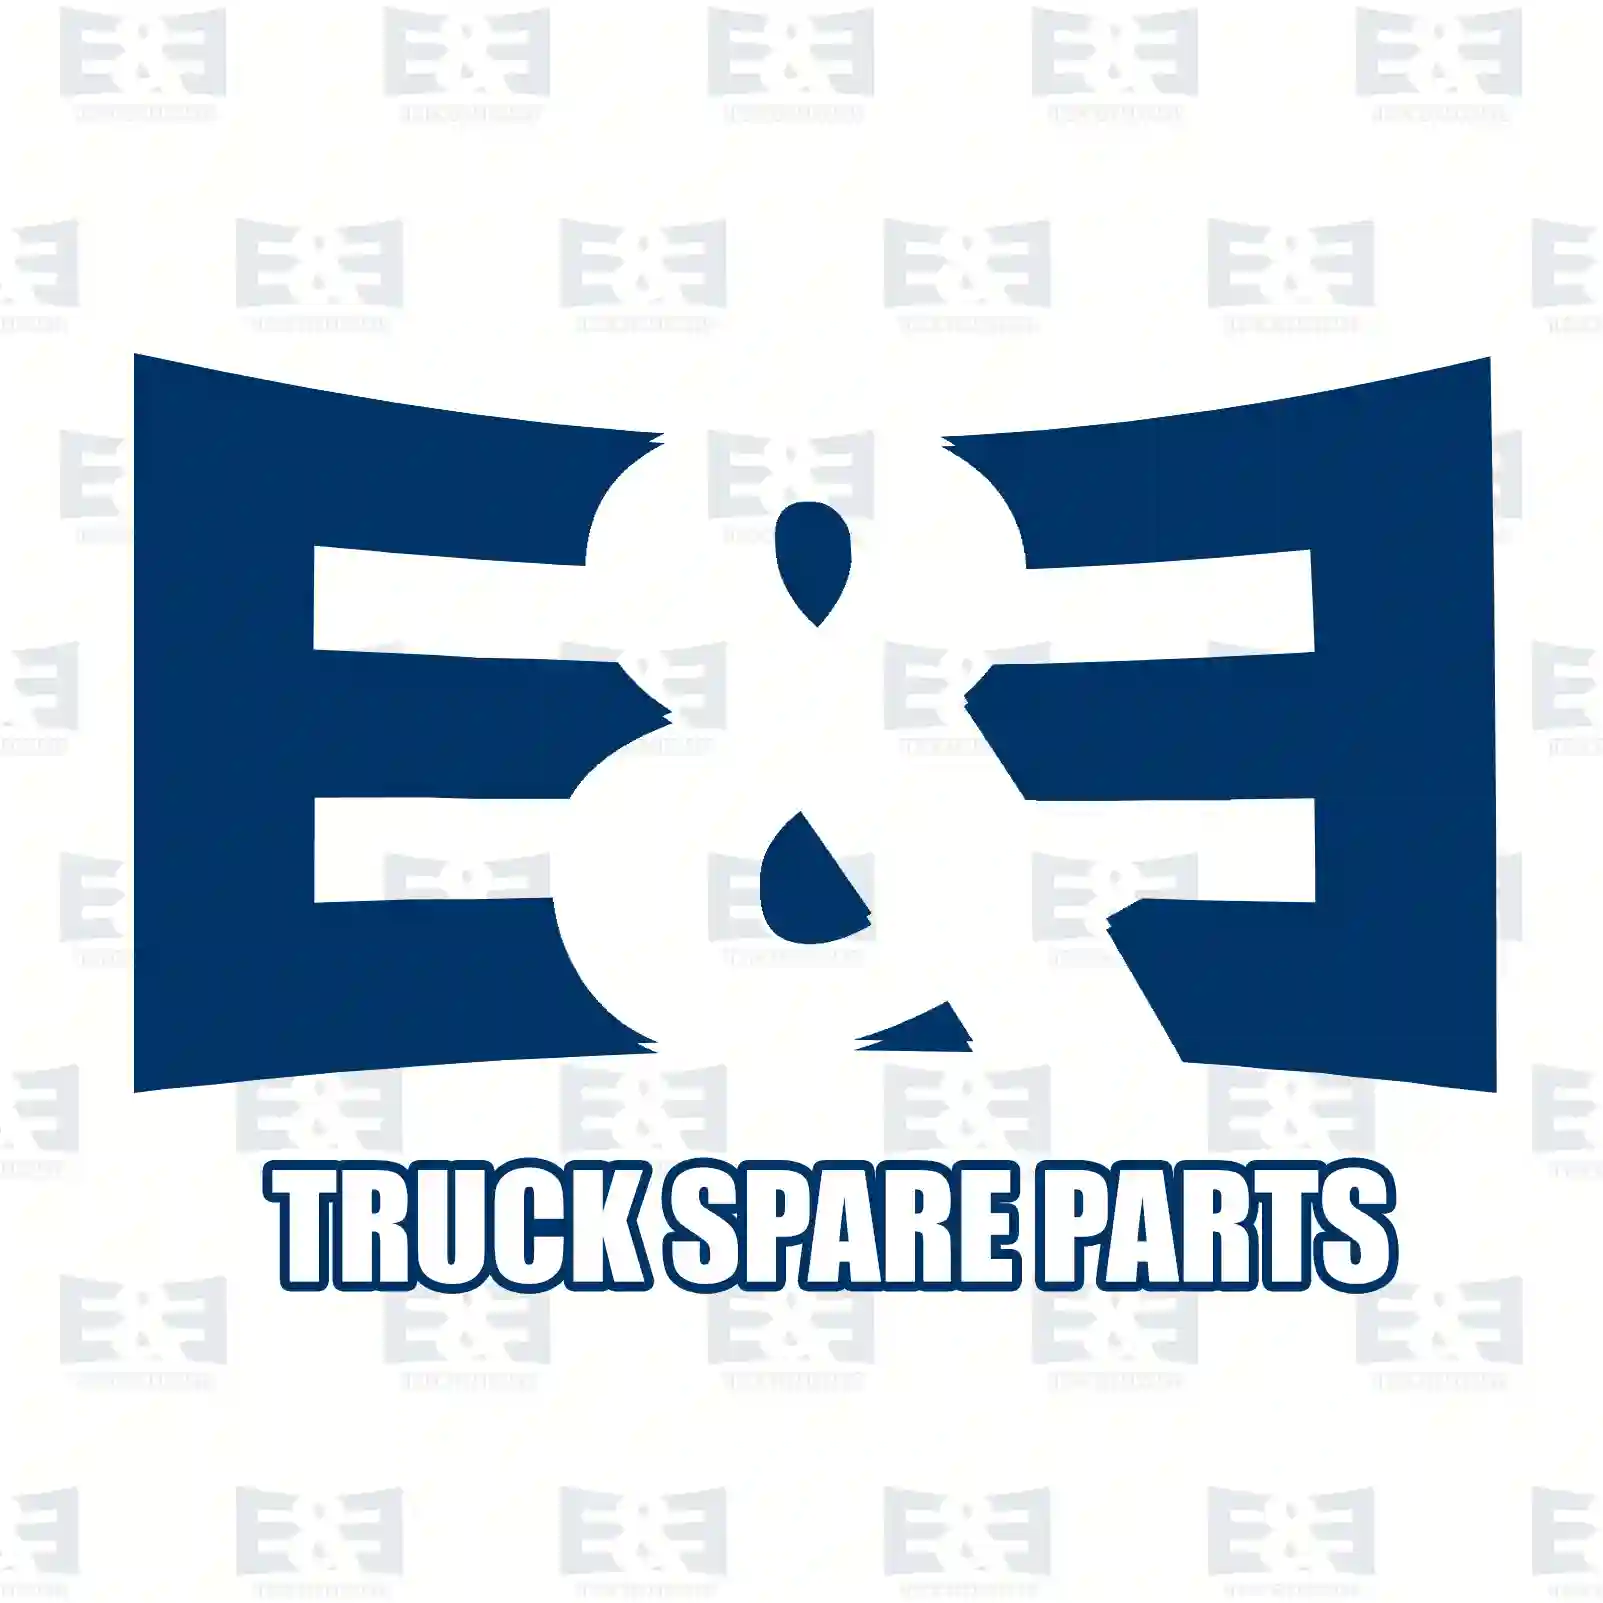 Fan with clutch, 2E2201329, 1392558, 1404903, 1459901 ||  2E2201329 E&E Truck Spare Parts | Truck Spare Parts, Auotomotive Spare Parts Fan with clutch, 2E2201329, 1392558, 1404903, 1459901 ||  2E2201329 E&E Truck Spare Parts | Truck Spare Parts, Auotomotive Spare Parts